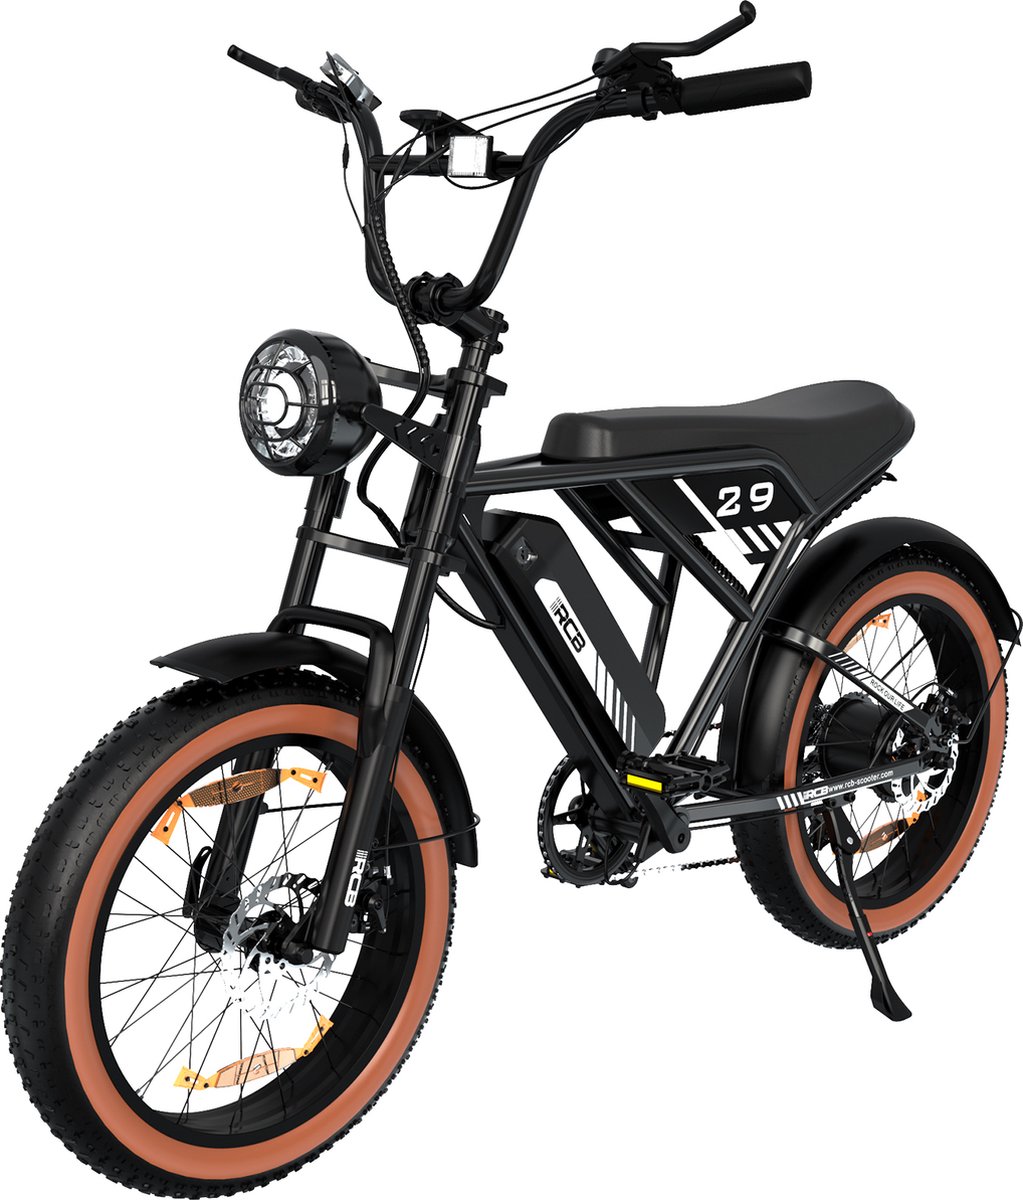 P4B - Fatbike - Elektrische Fatbike - Hitway - Elektrische Fiets - Elektrische Mountainbike - E bike - Zwart - 1 jaar garantie - Legaal openbare weg